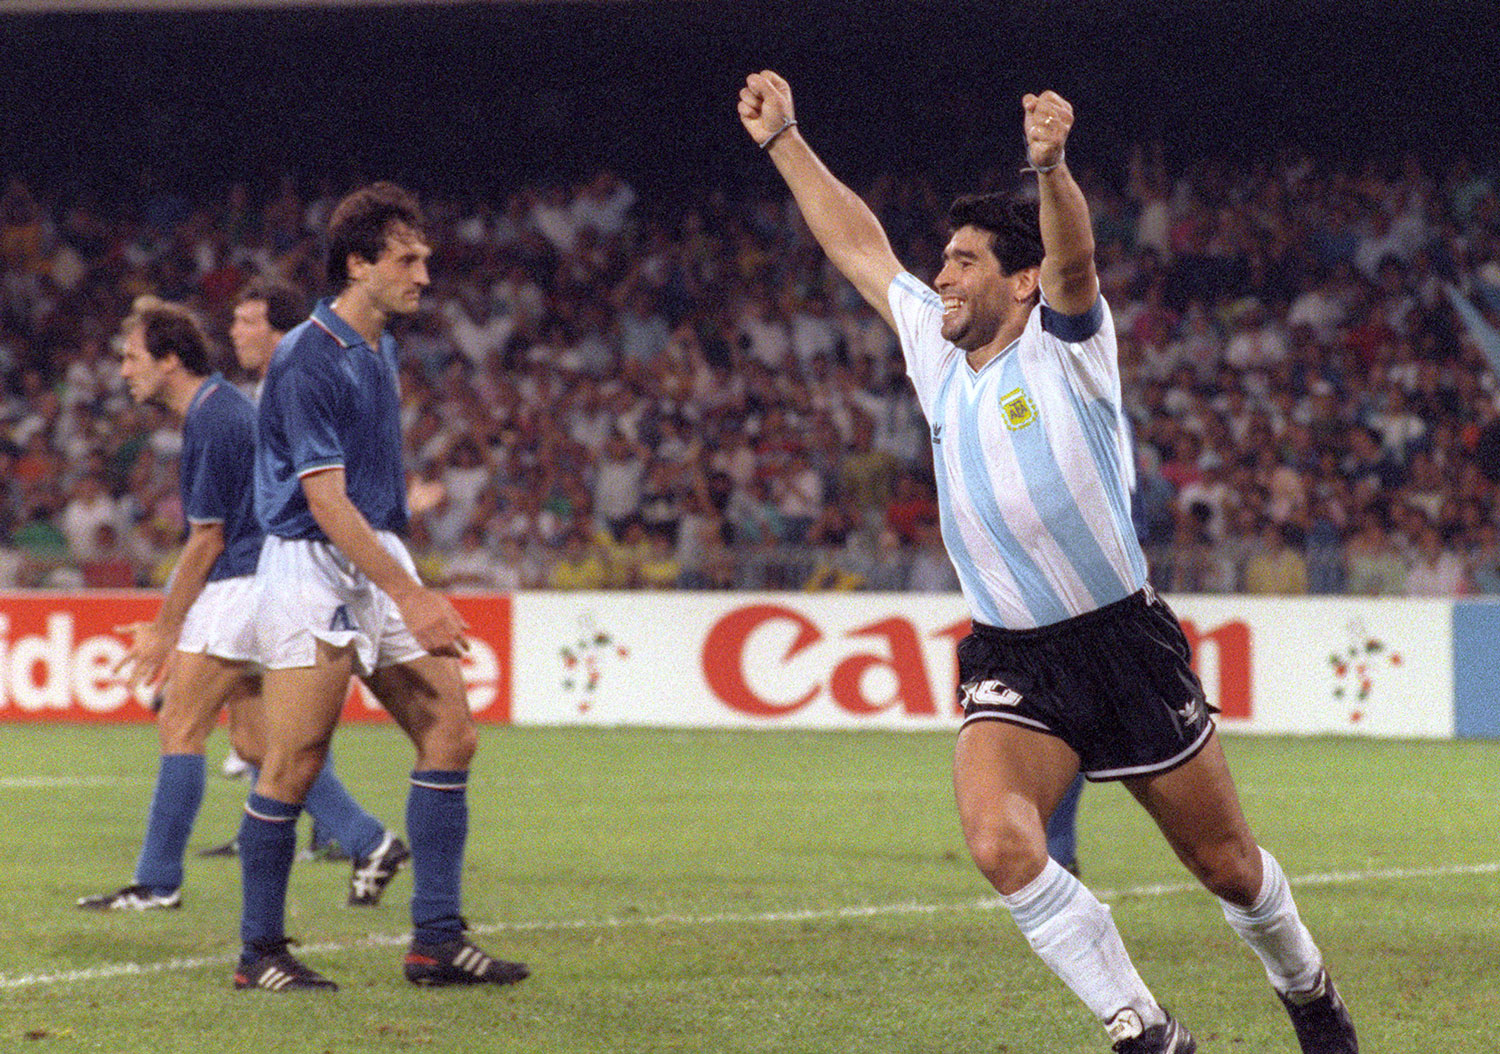 Maradona festeja el empate de Caniggia contra Italia en el mundial del '90. Según muchos, los italianos no le perdonaron esta afrenta a Maradona. ©DANIEL GARCIA/AFP via Getty Images.